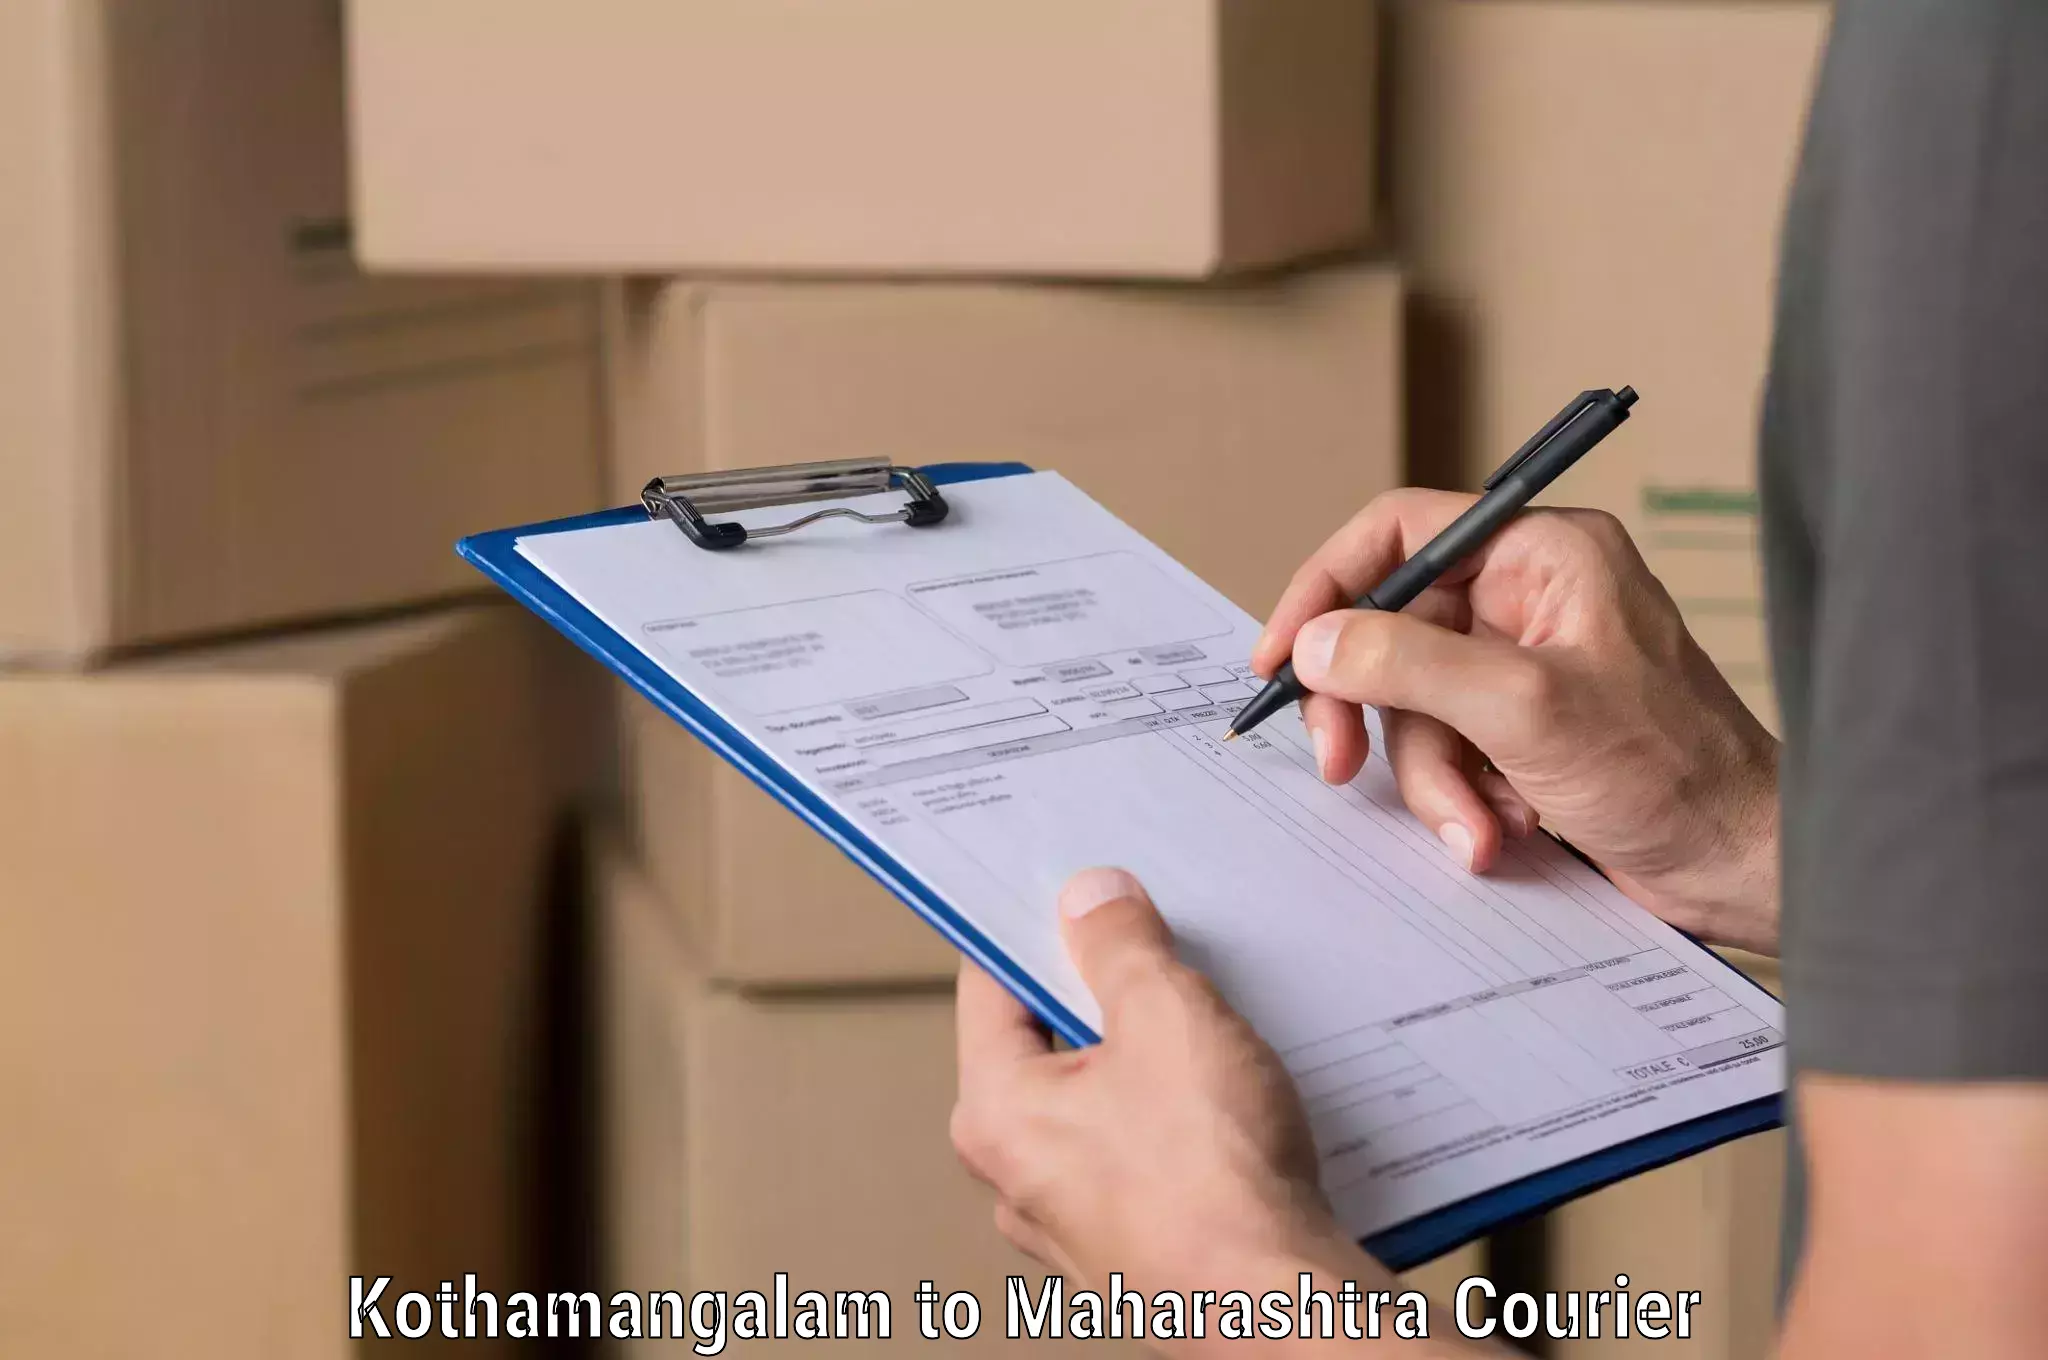 Optimized shipping services Kothamangalam to Sillod